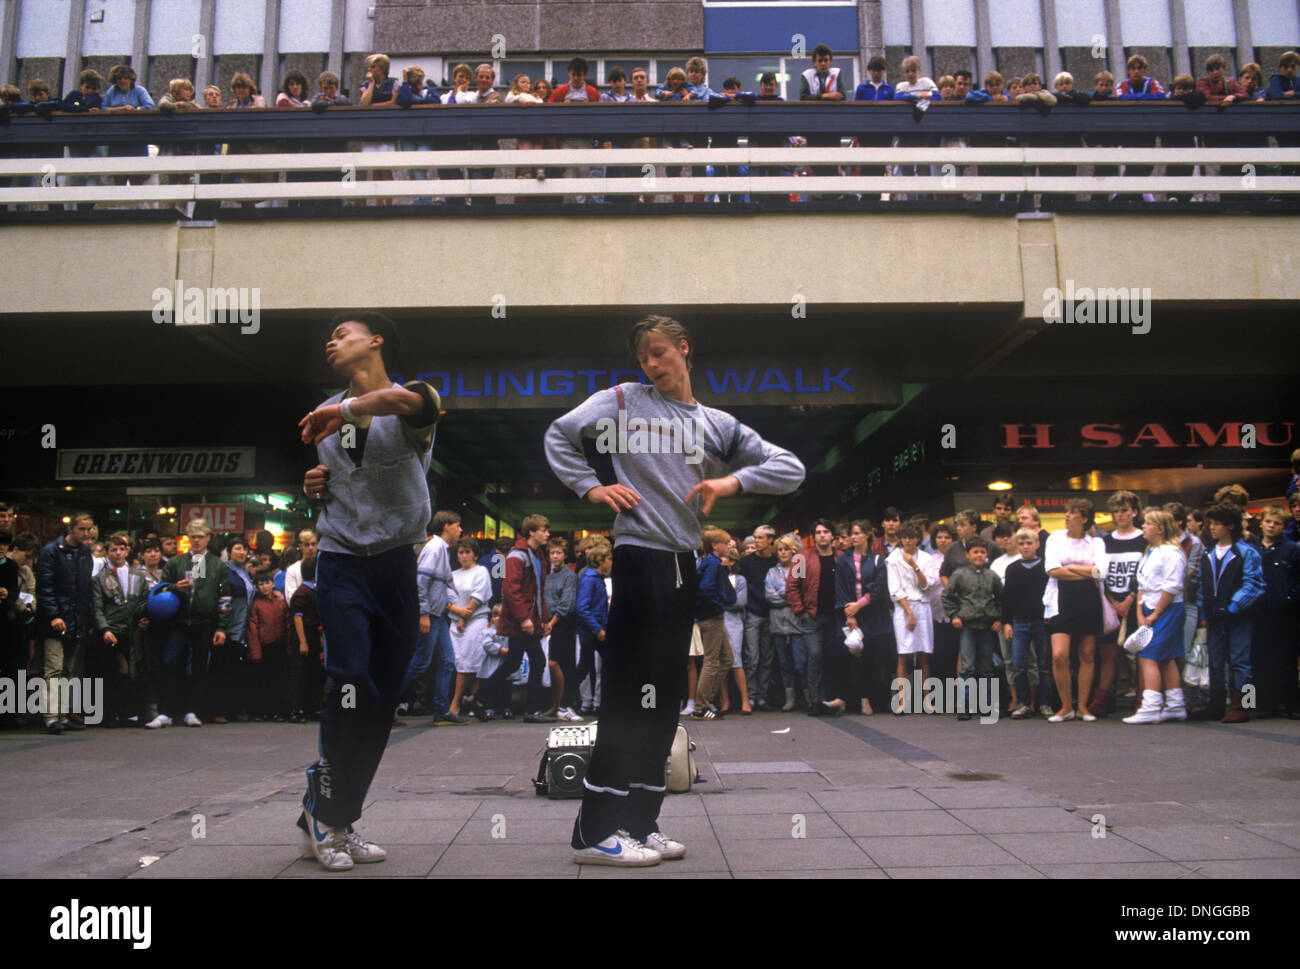 Jugendliche brechen in den 1980er Jahren in einem Einkaufszentrum Menschenmassen zu beobachten. Stockport Lancashire England um 1985 HOMER SYKES Stockfoto